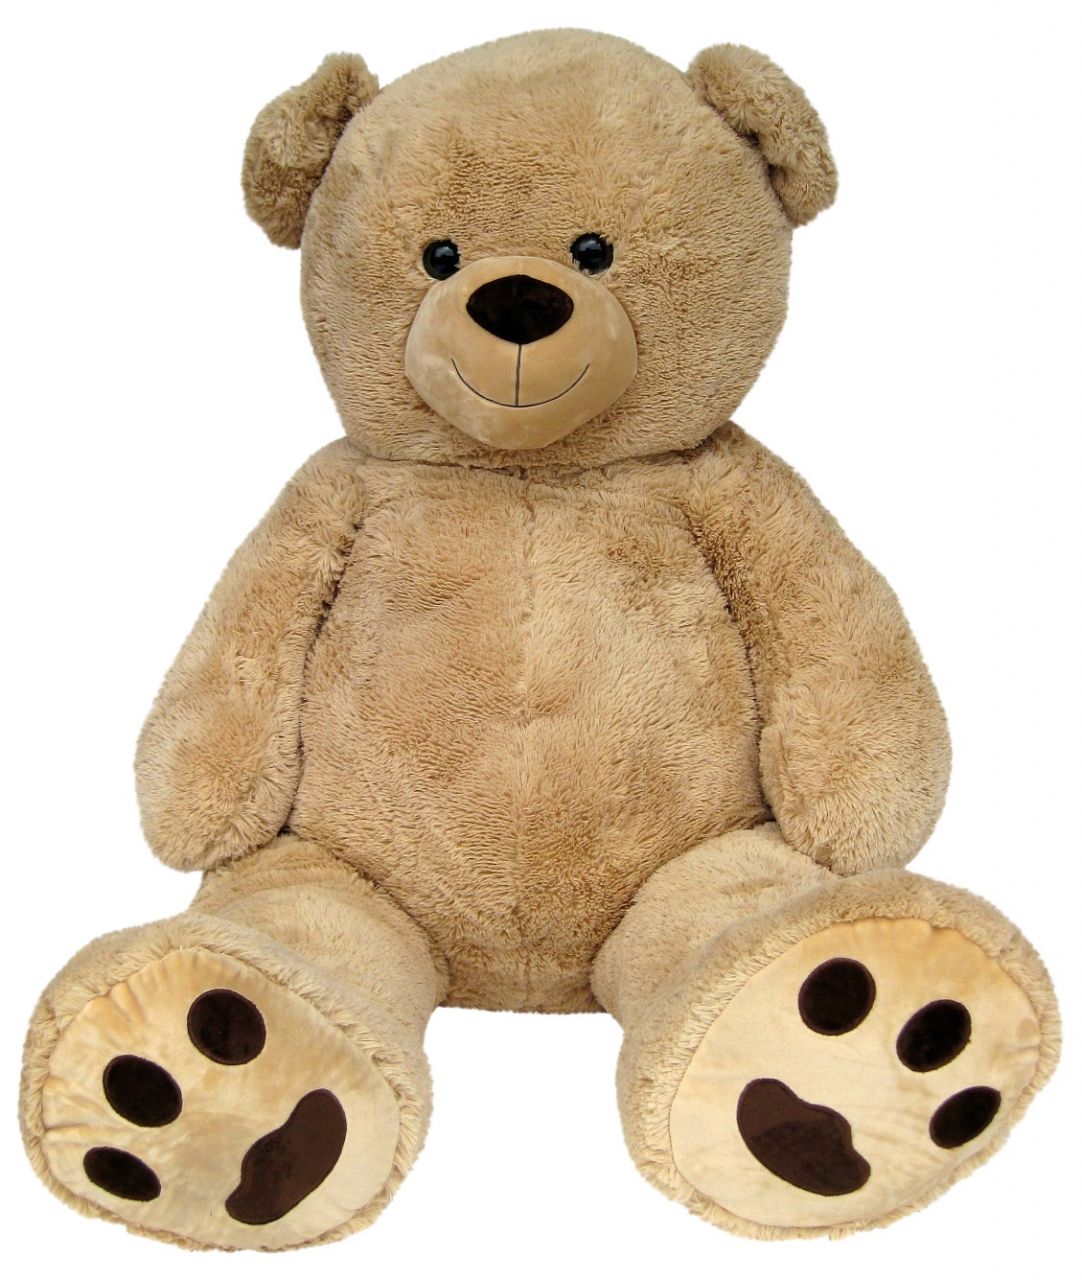 Teddybär Riesen Teddy Plüschbär Plüschtier aus Plüsch viele Farben XXL 160 cm 